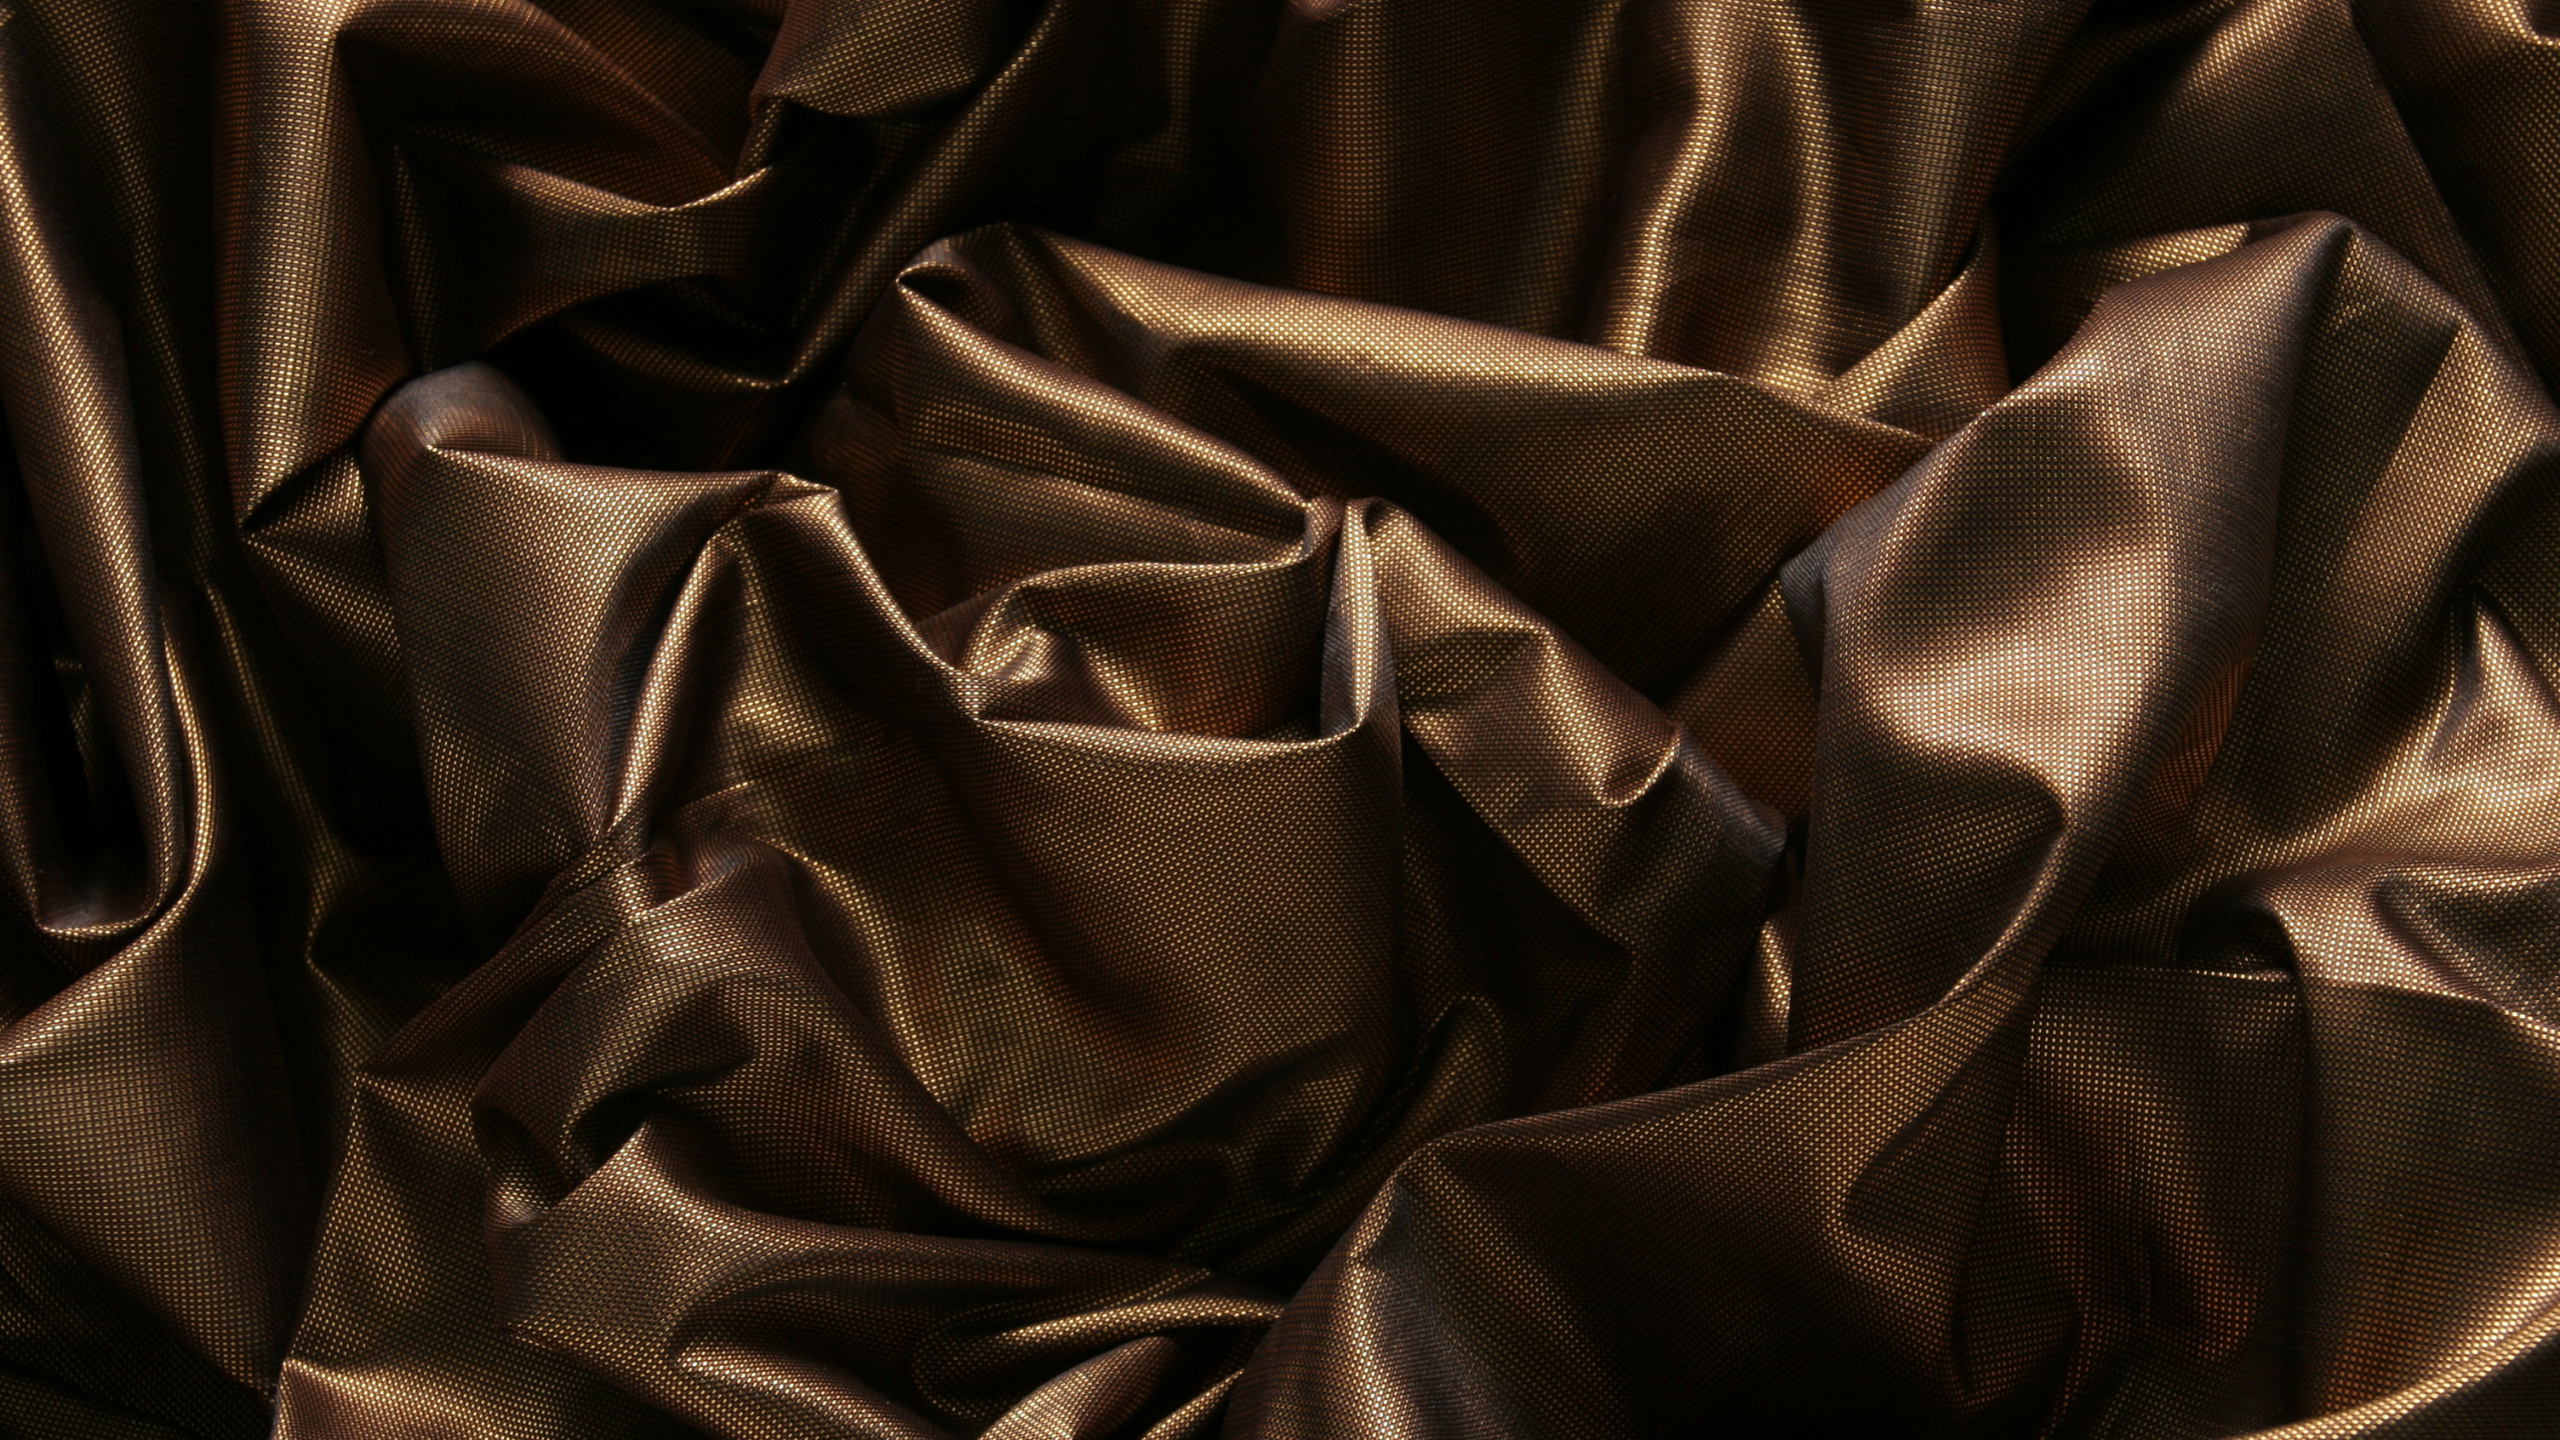 Textile Noir Sur Textile Blanc. Wallpaper in 2560x1440 Resolution